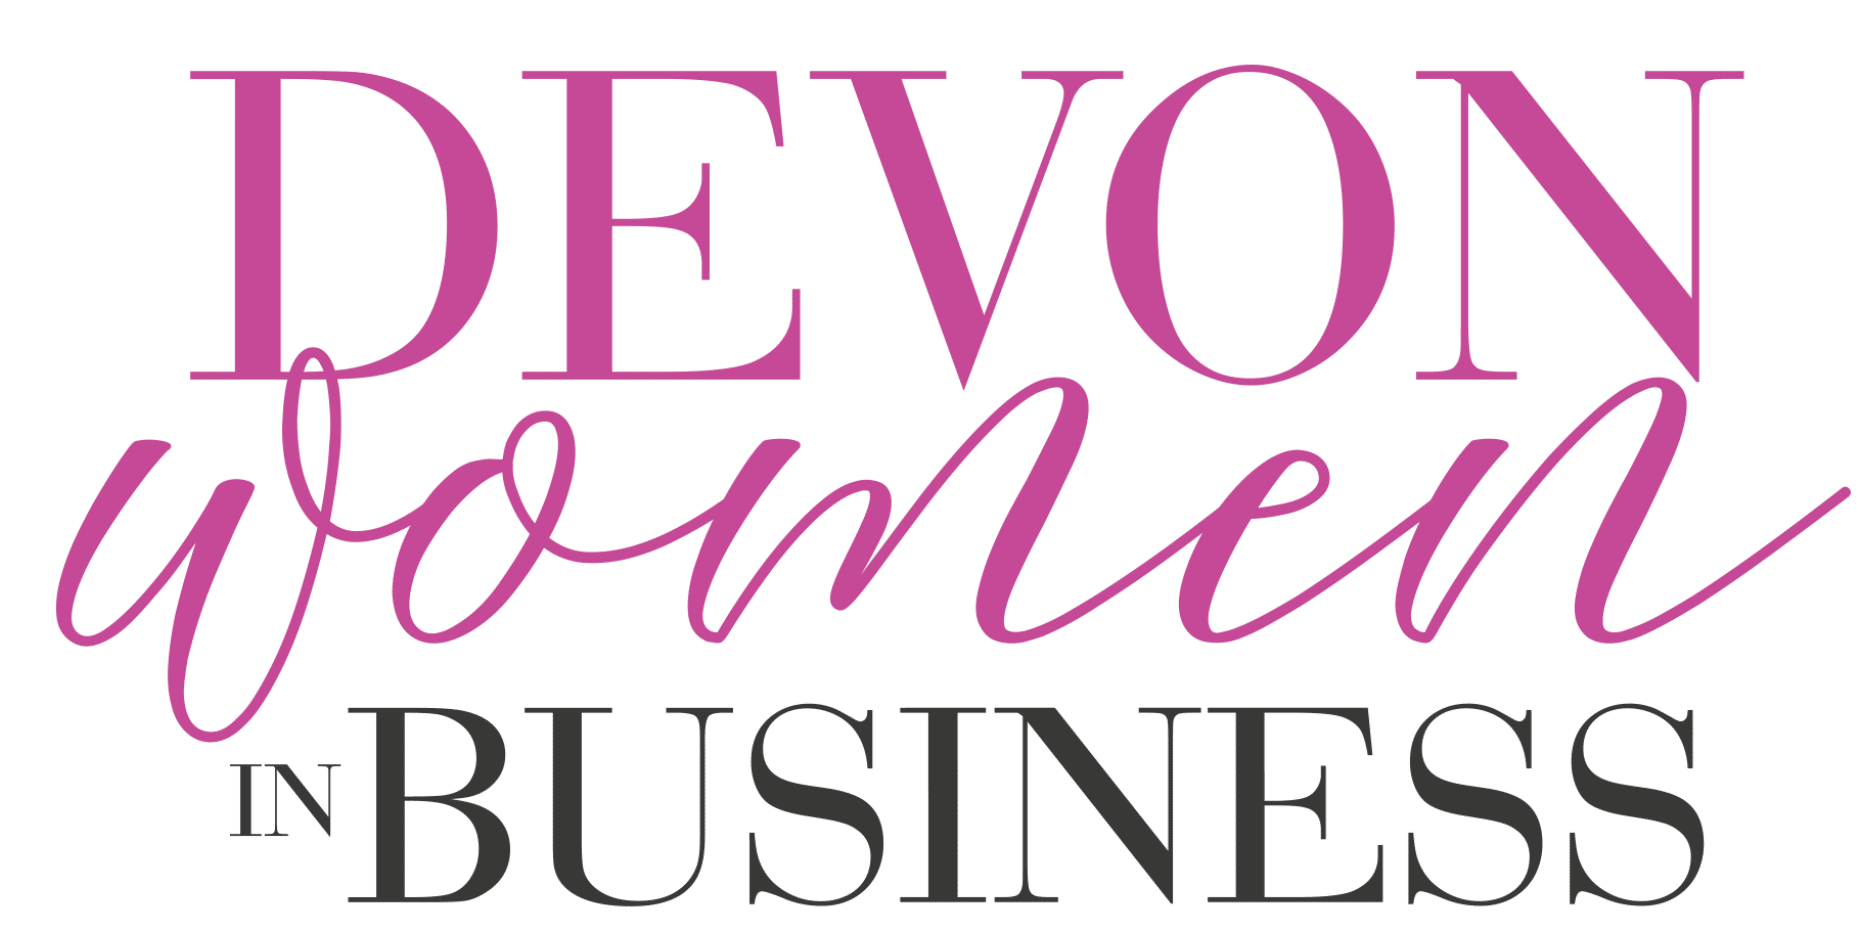 Devon Women In Business logo